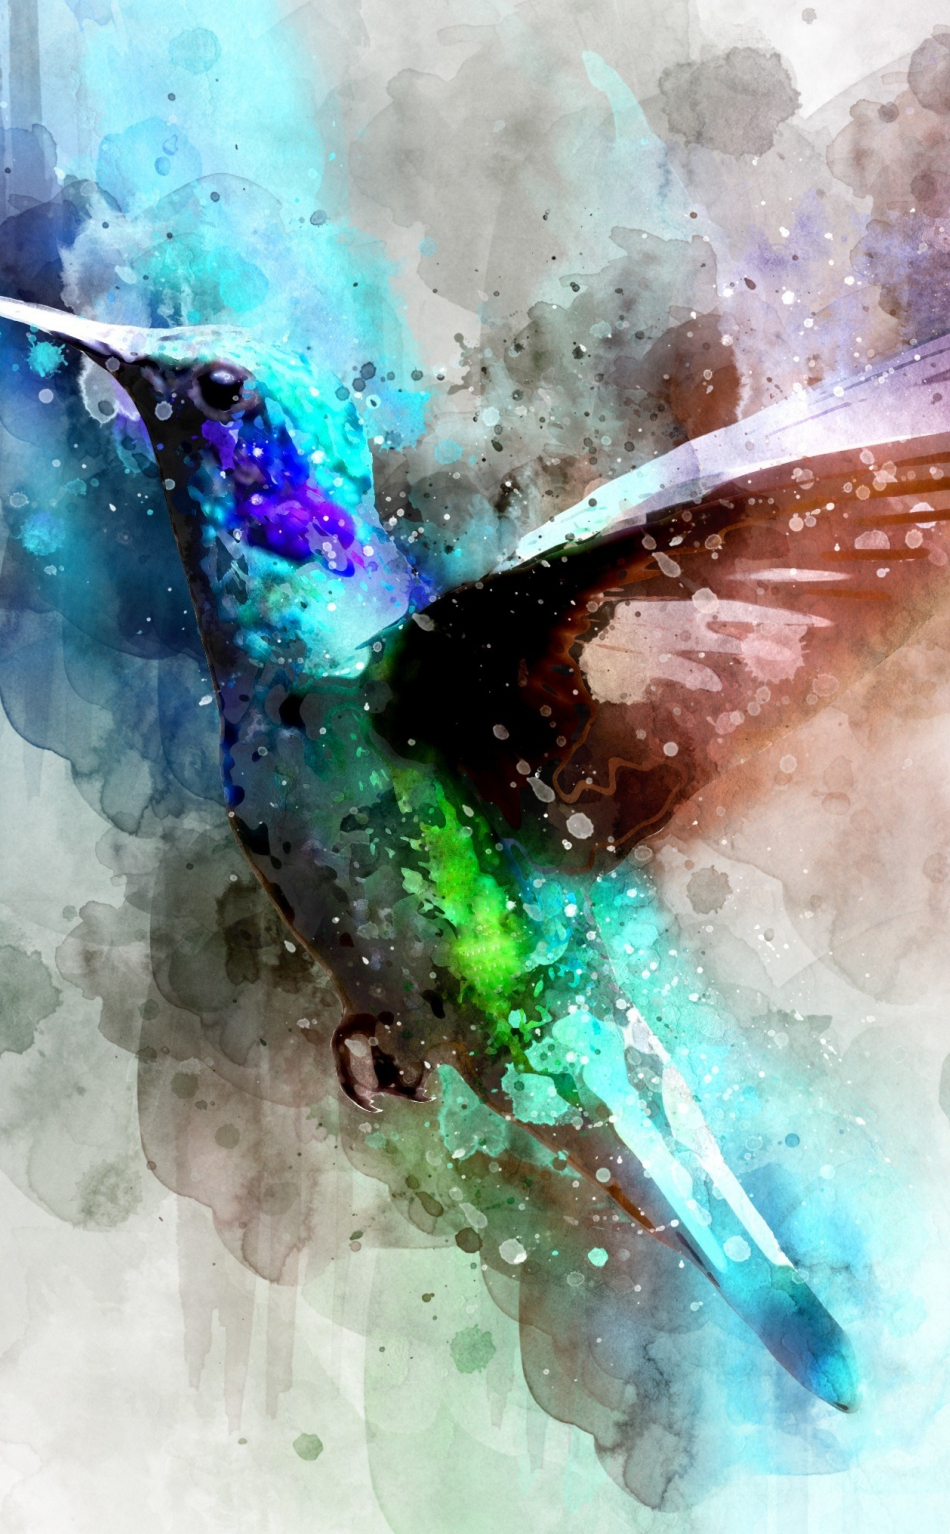 Hummingbird Wallpaper